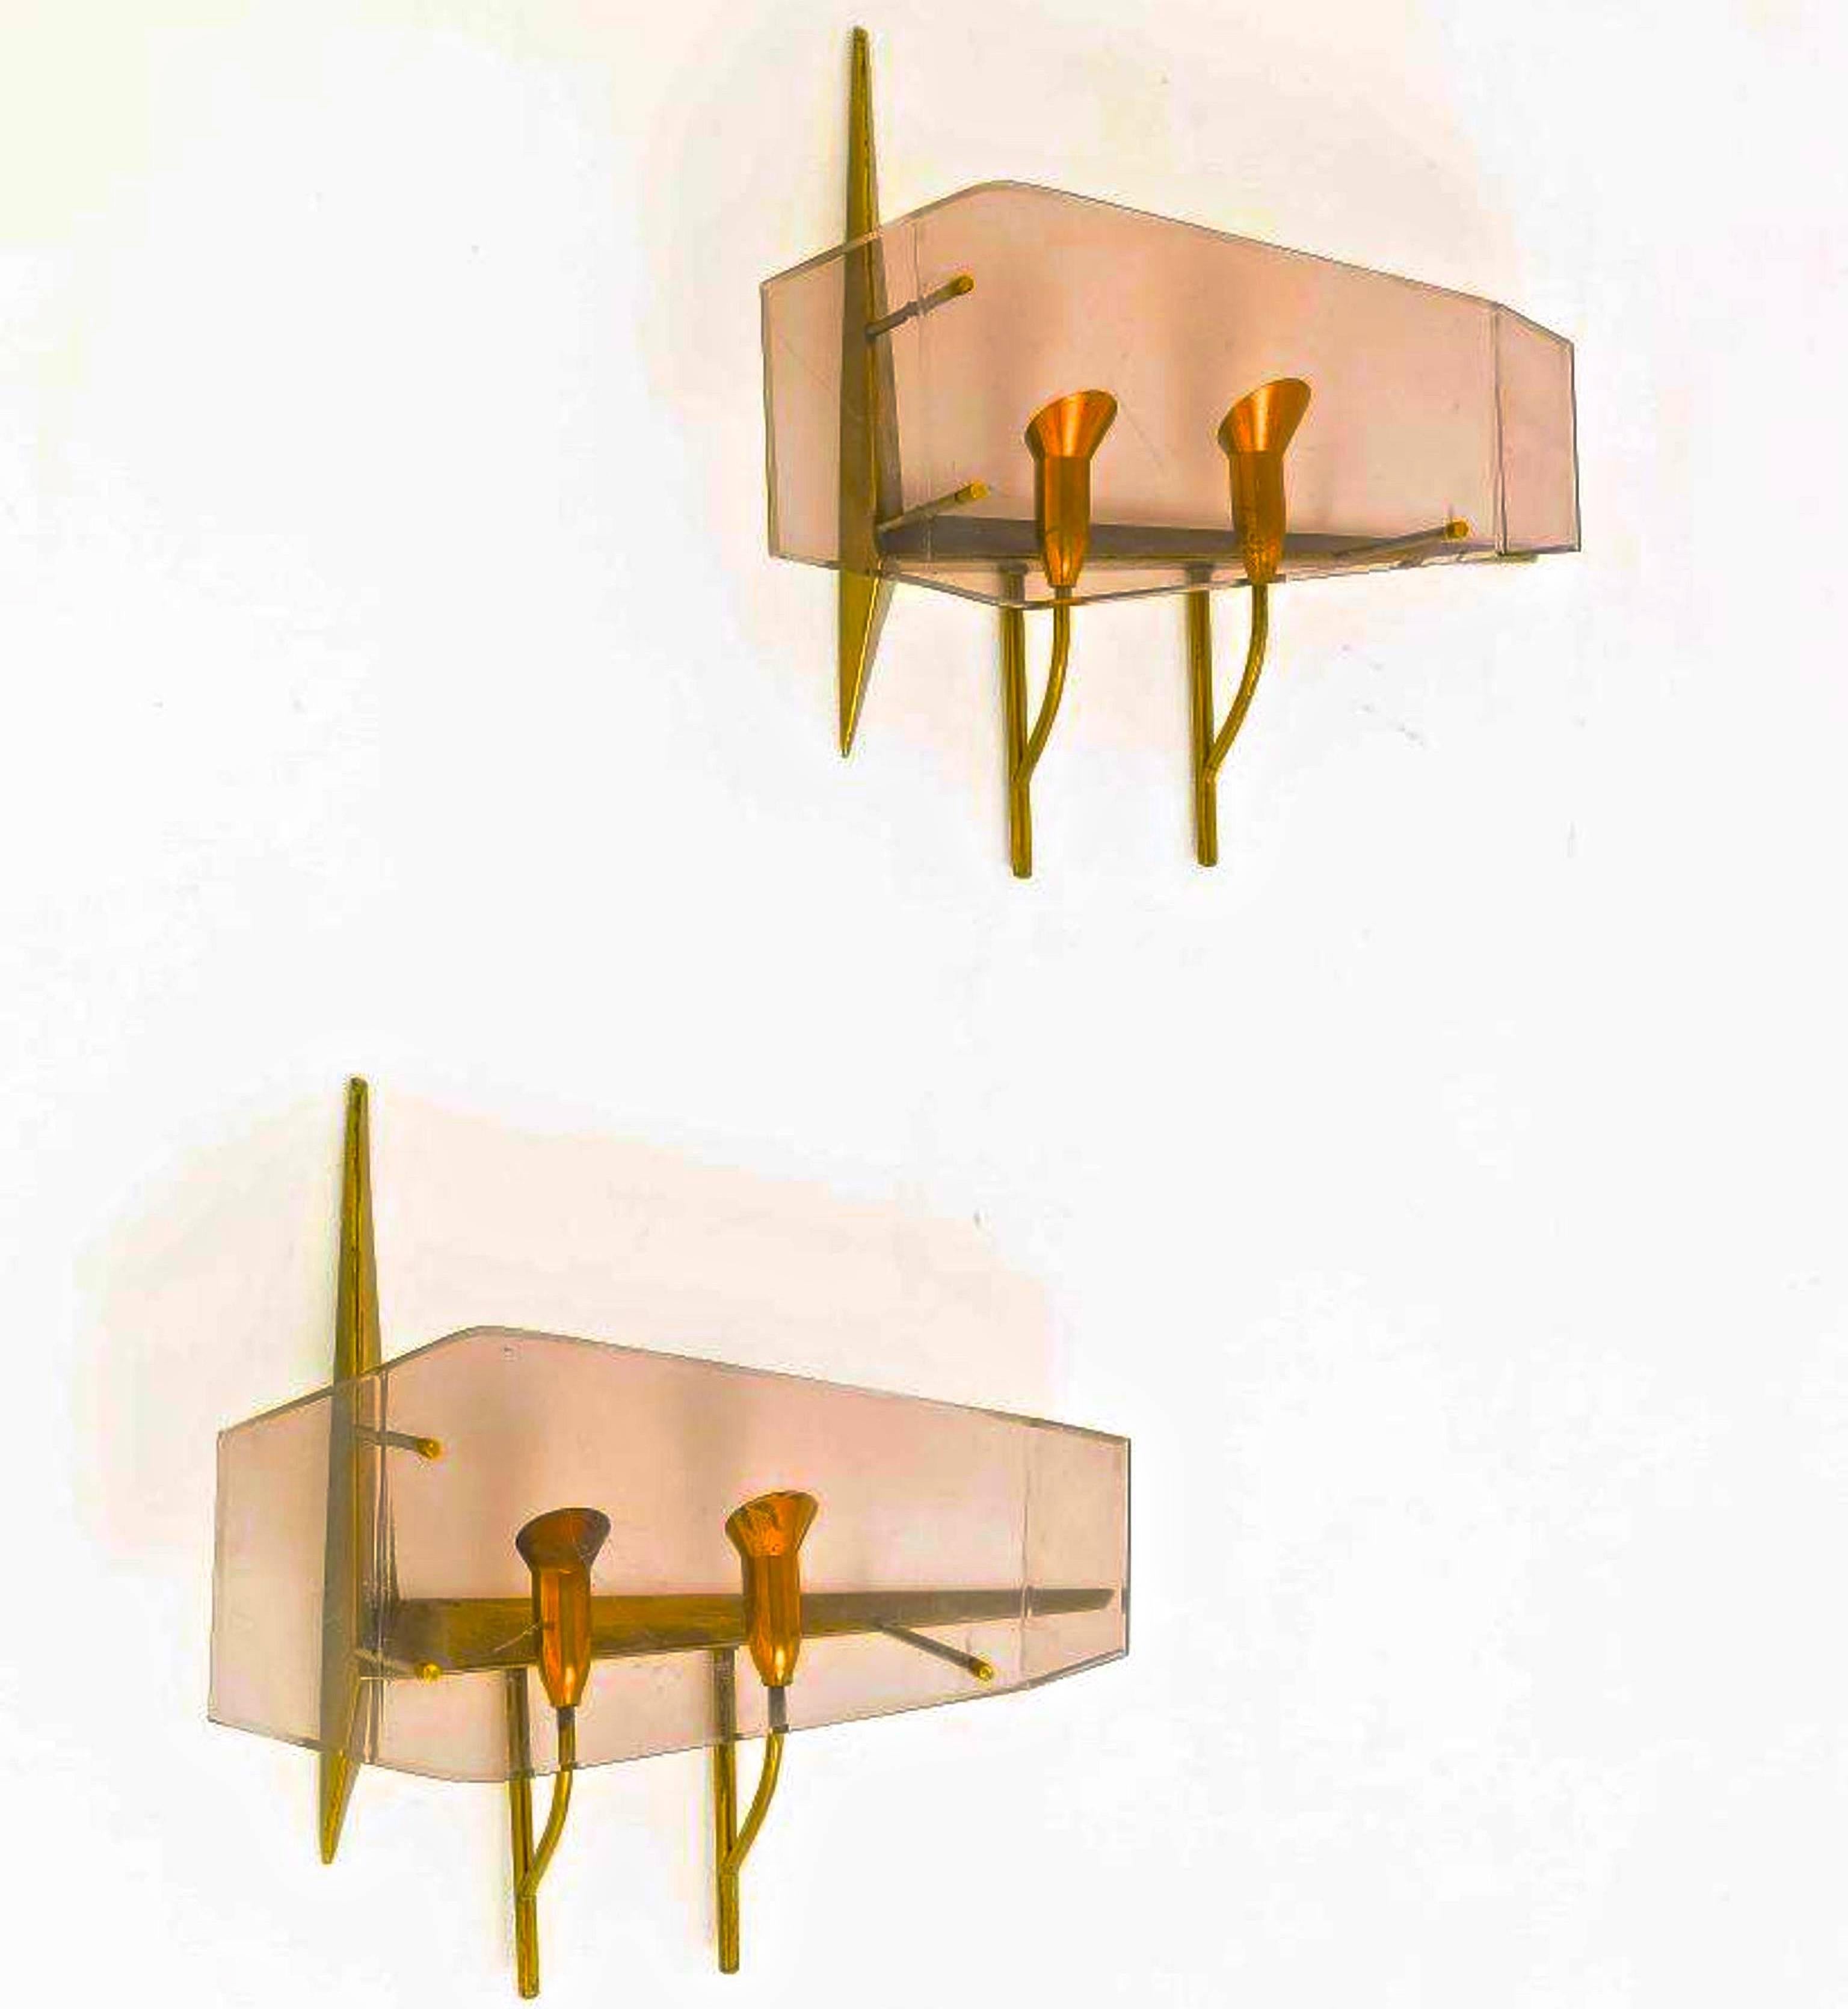 Sehr seltenes Paar Wandlampen, um 1960, entworfen von Oscar Torlasco für Stilux Milano. 
Doppellichtstruktur aus Messing mit farbig getöntem Plexiglas. 
Jeder Wandleuchter fasst zwei Kandelaberglühbirnen mit jeweils bis zu 60 Watt. Rewired for